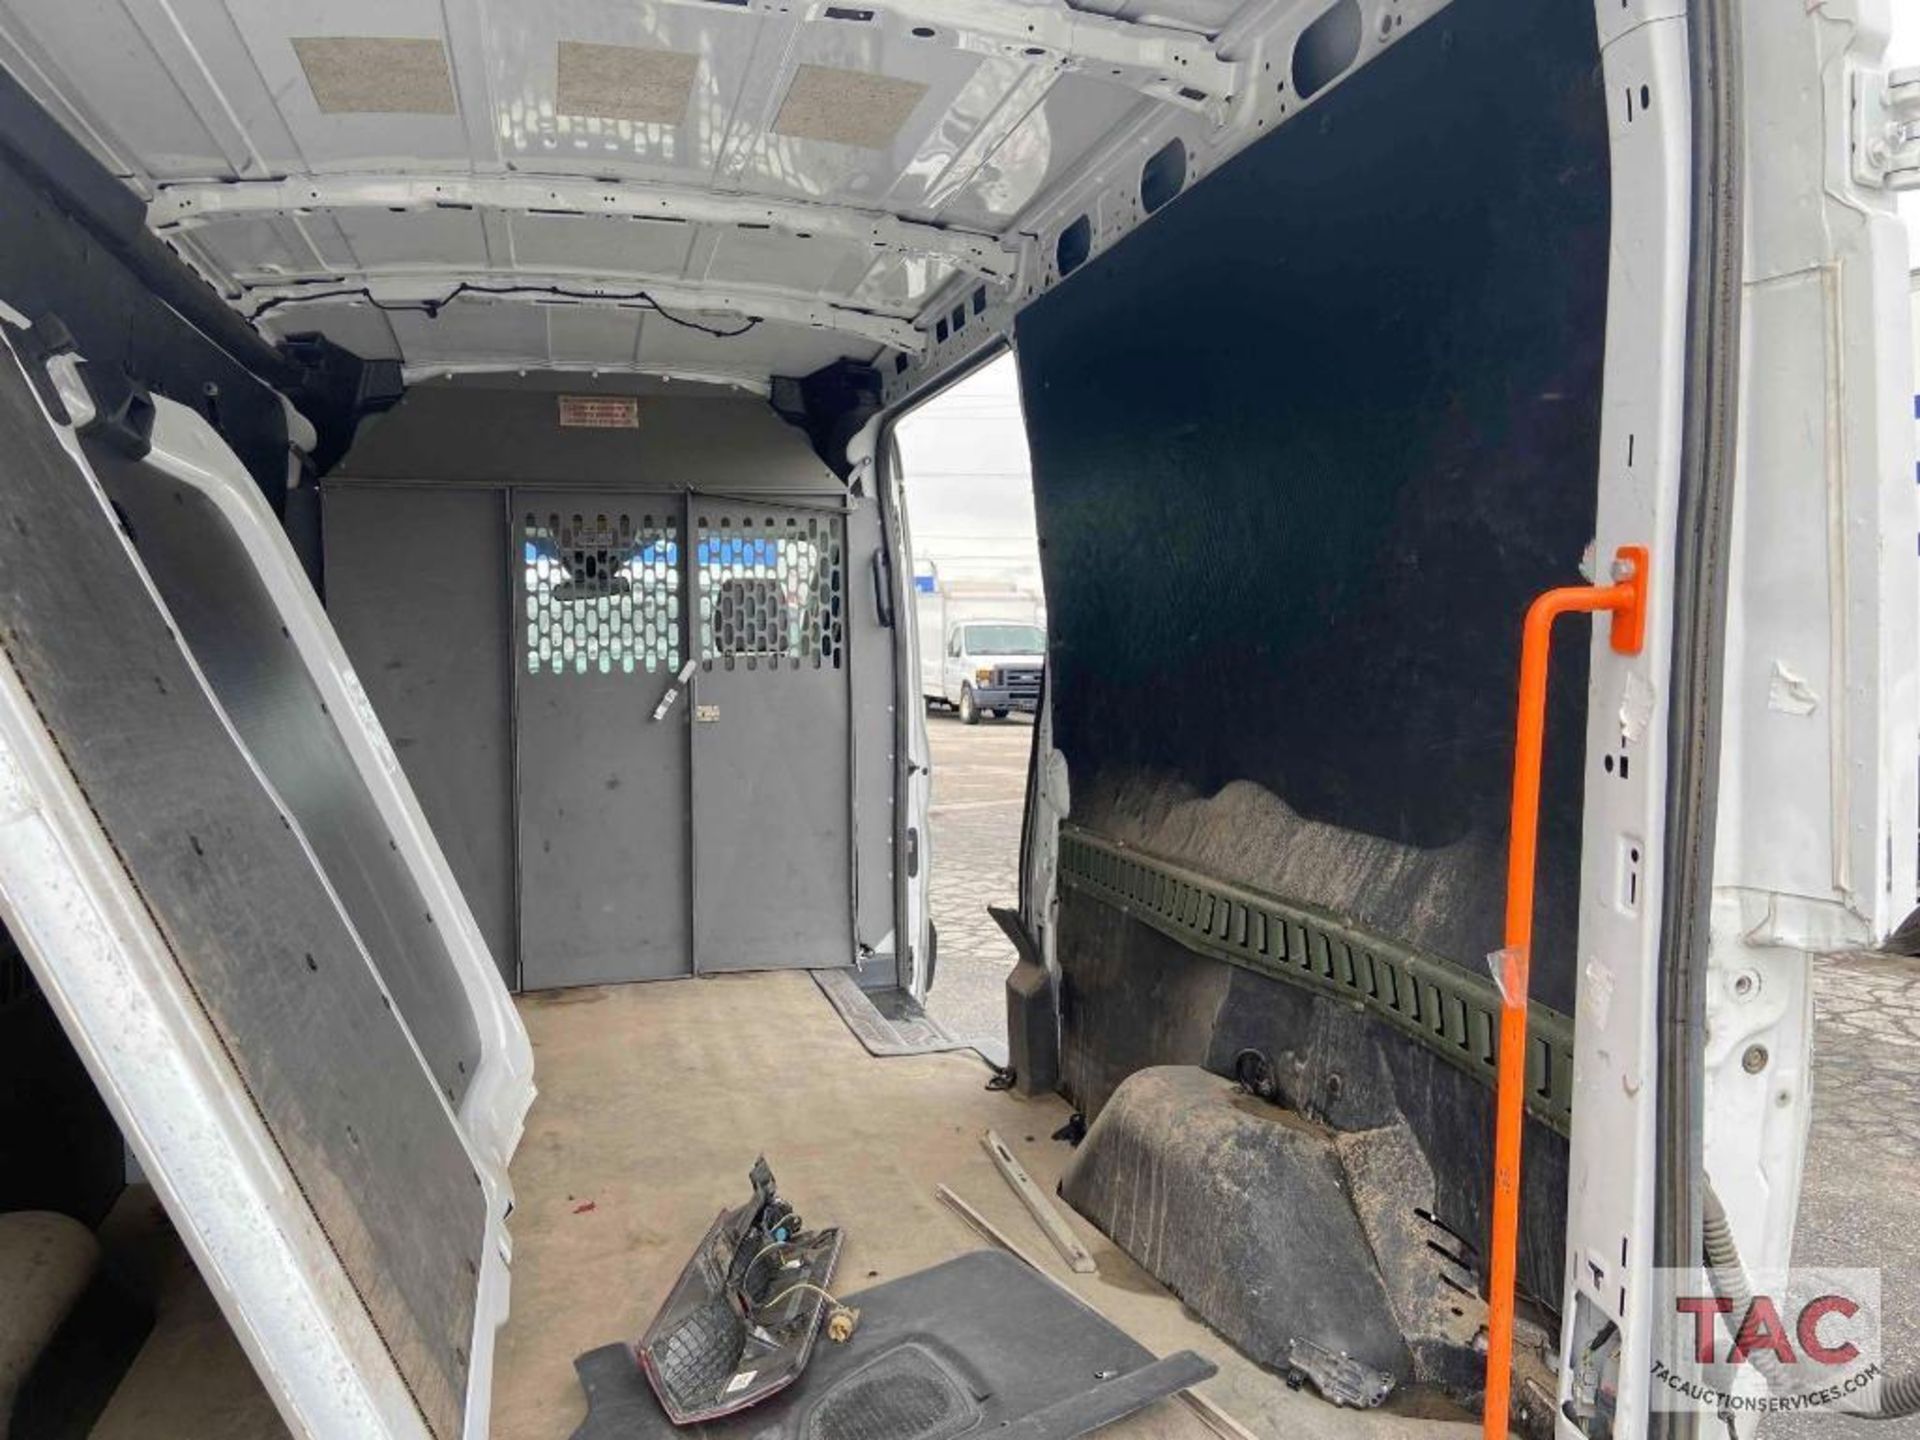 2017 Ford Transit 150 Cargo Van - Image 32 of 99